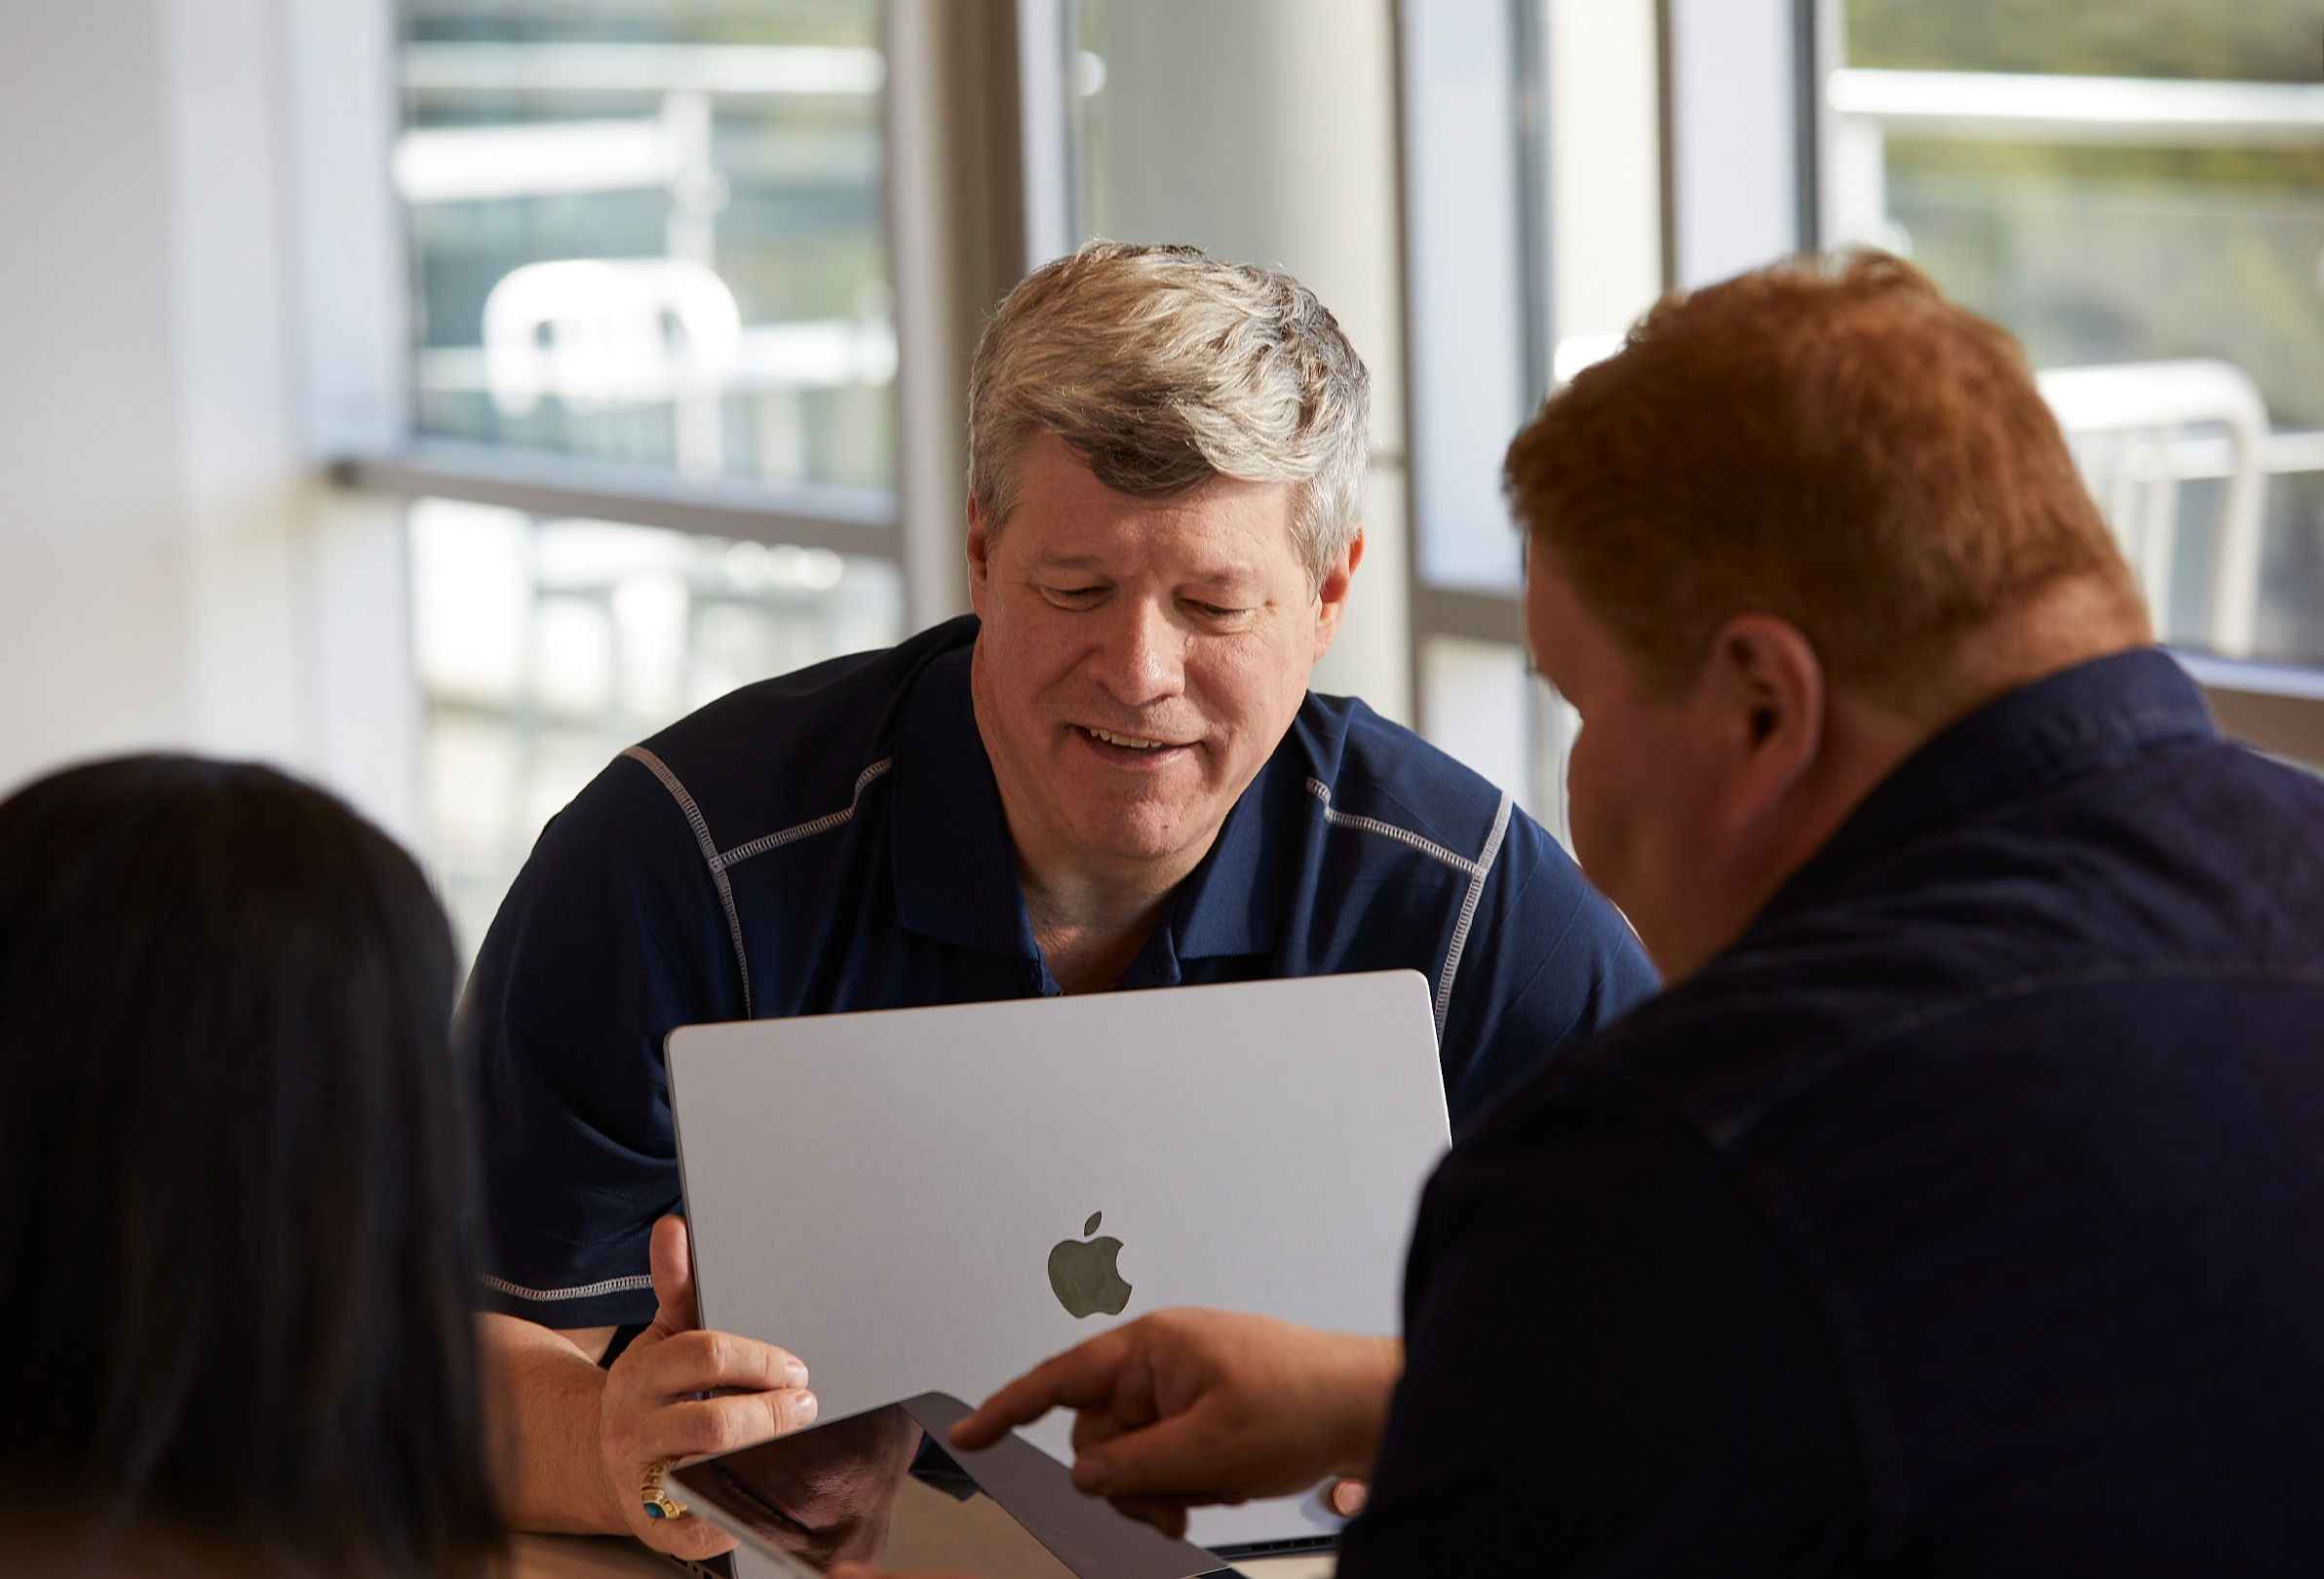 Troje pracowników Apple wykorzystujących MacBooka i iPada do współpracy.